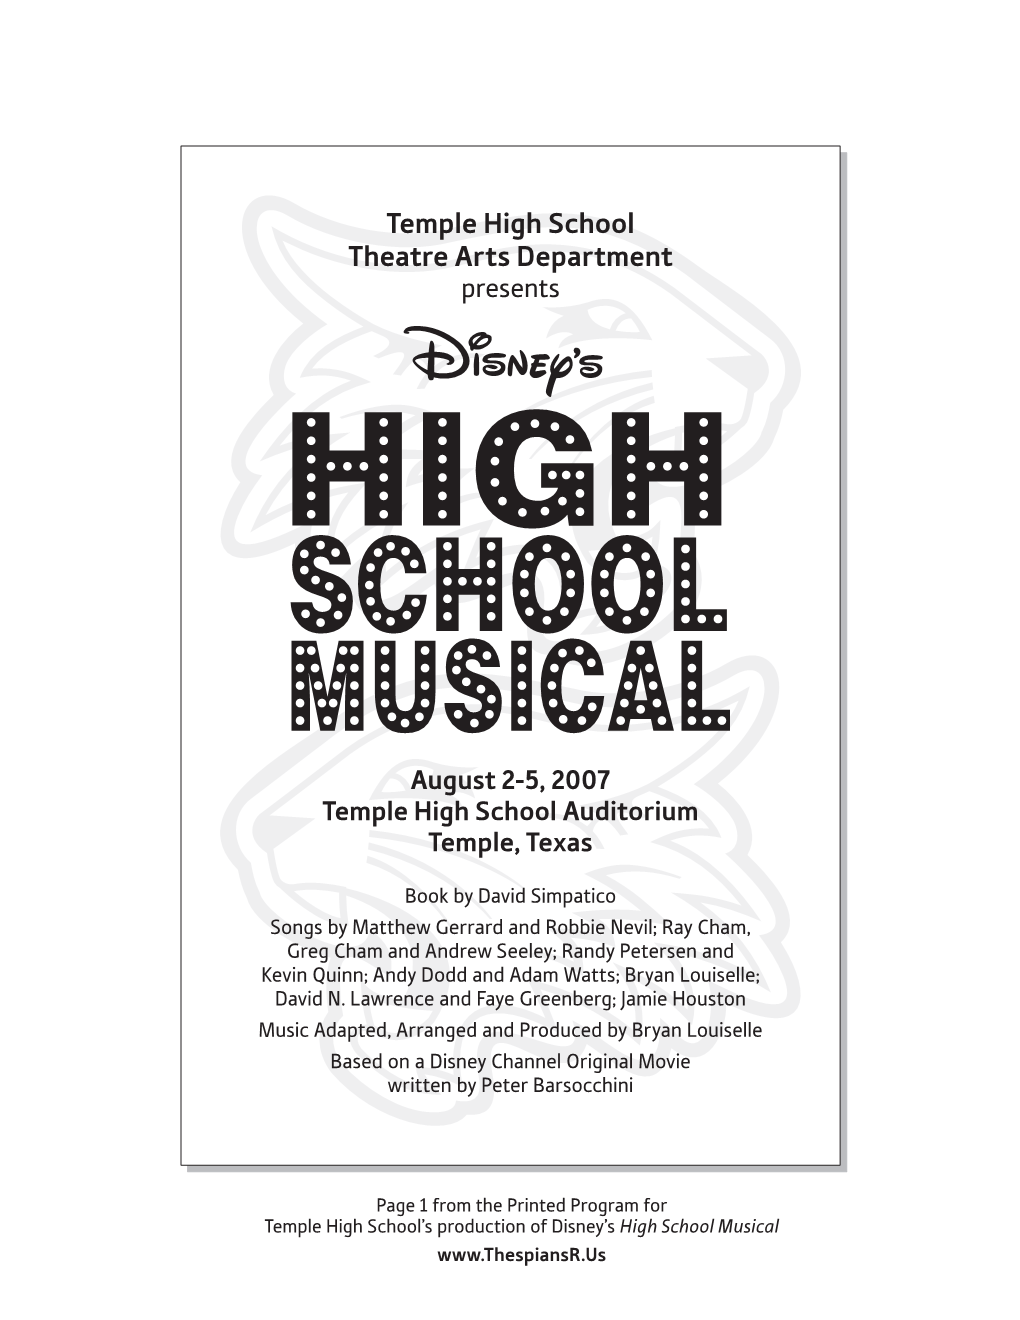 Temple High School Theatre Arts Department Presents